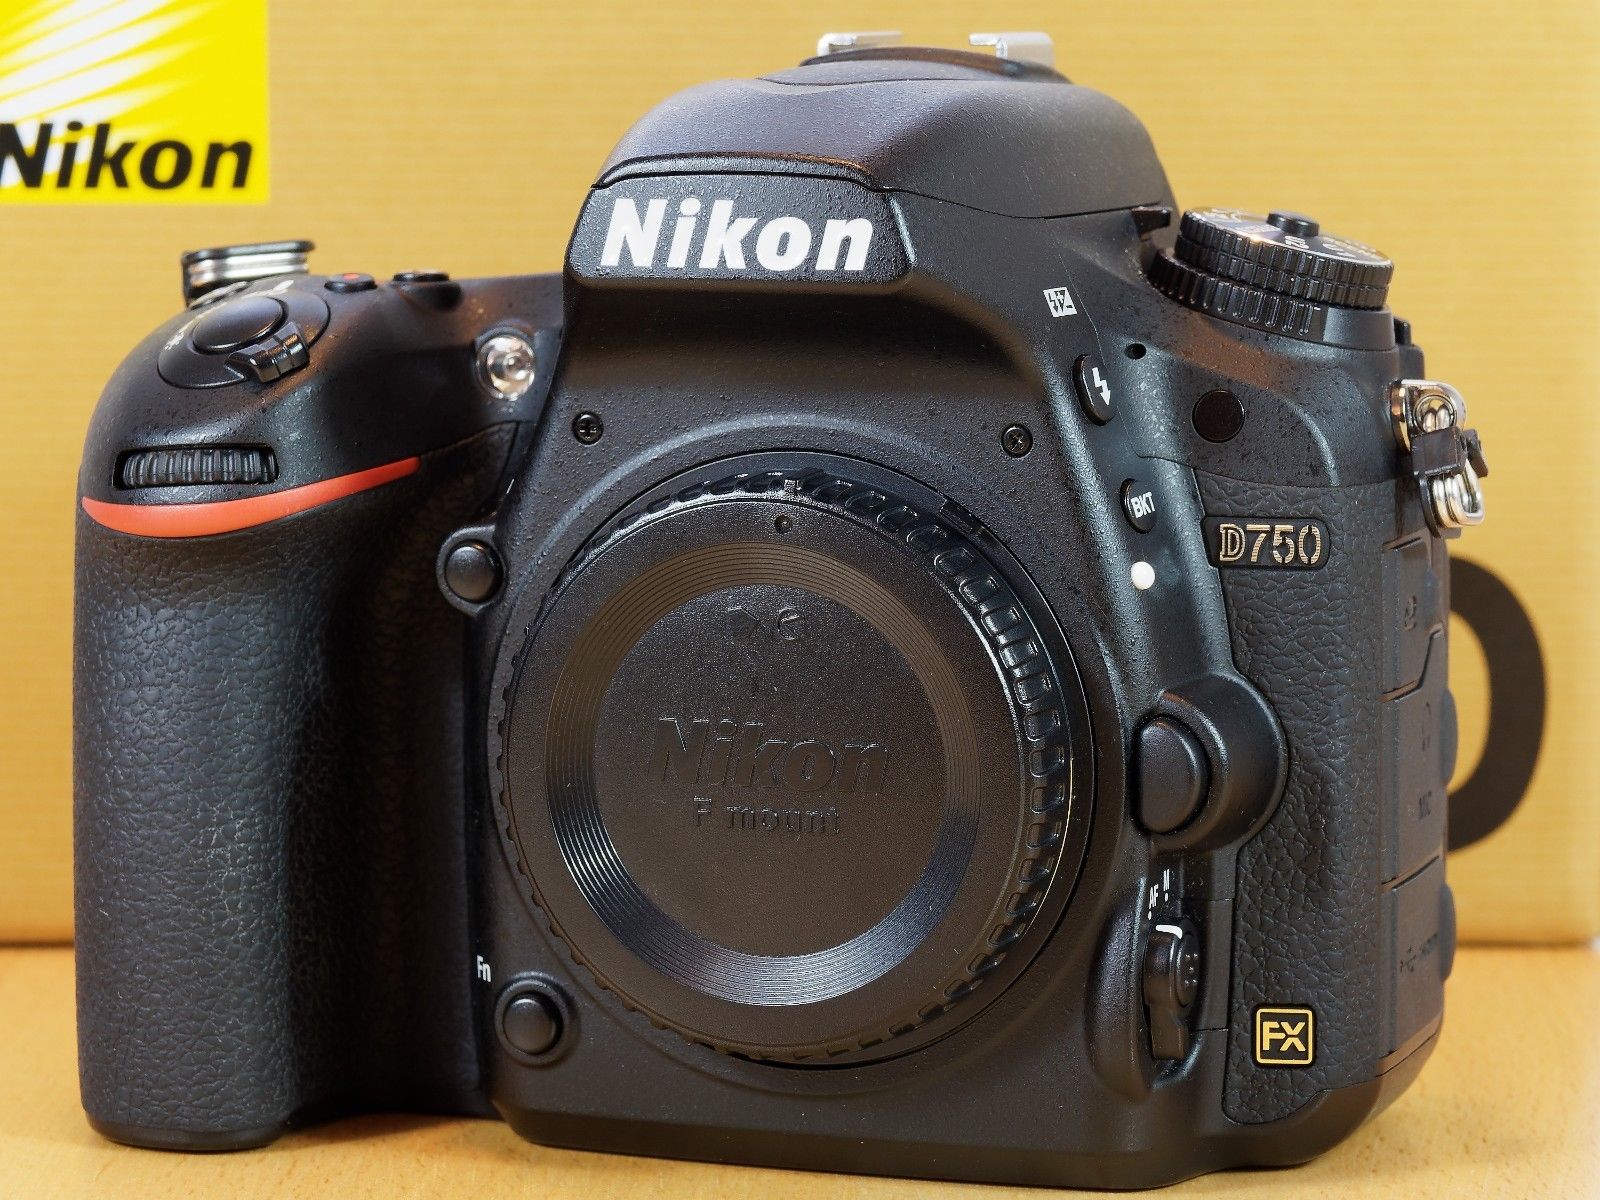 Nikon D750 Gehäuse (7500 Auslösungen, Super Zustand)